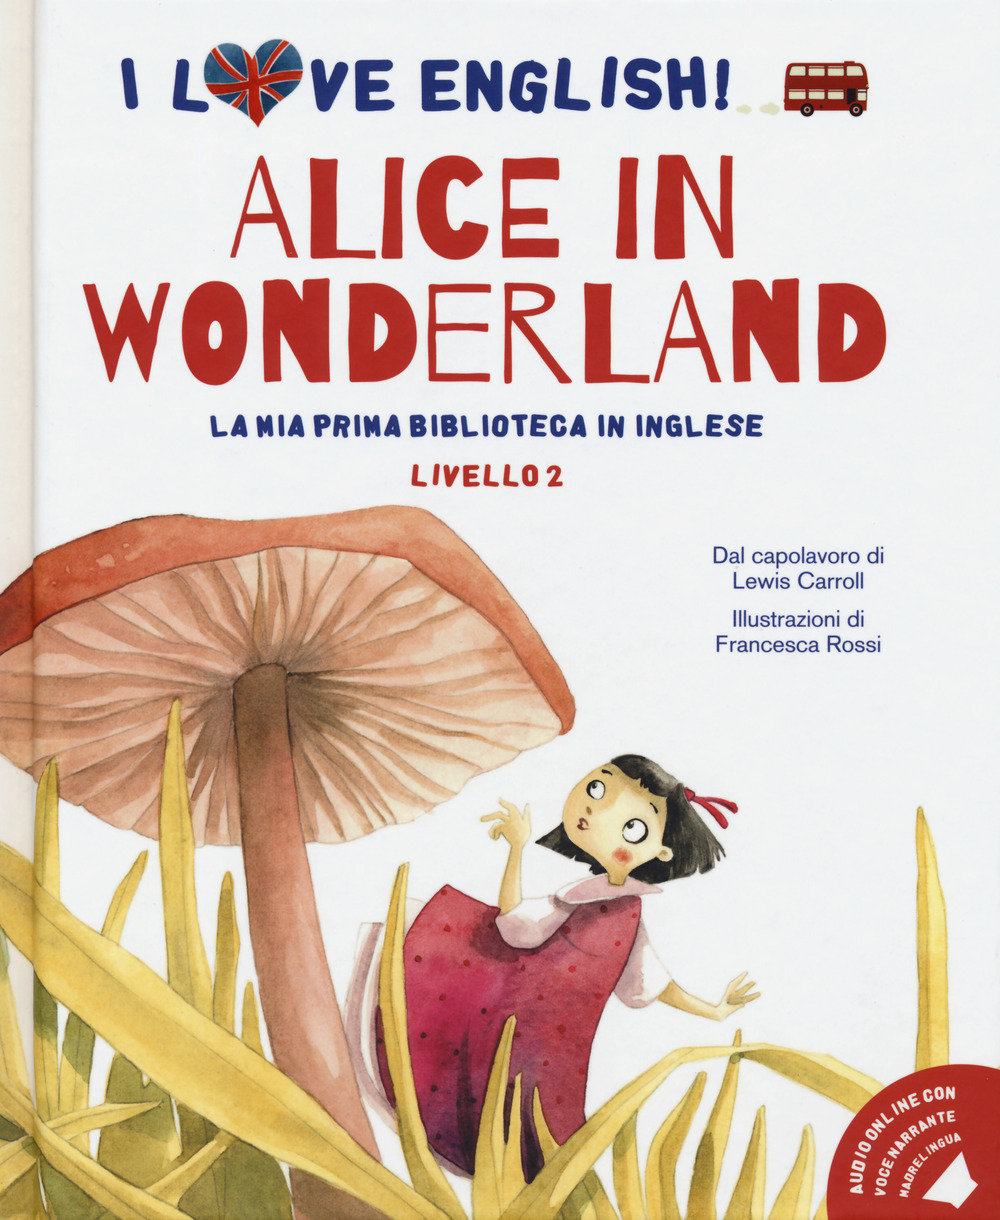 Alice in Wonderland dal capolavoro di Lewis Carroll. Livello 2. Ediz. italiana e inglese. Con File audio per il download